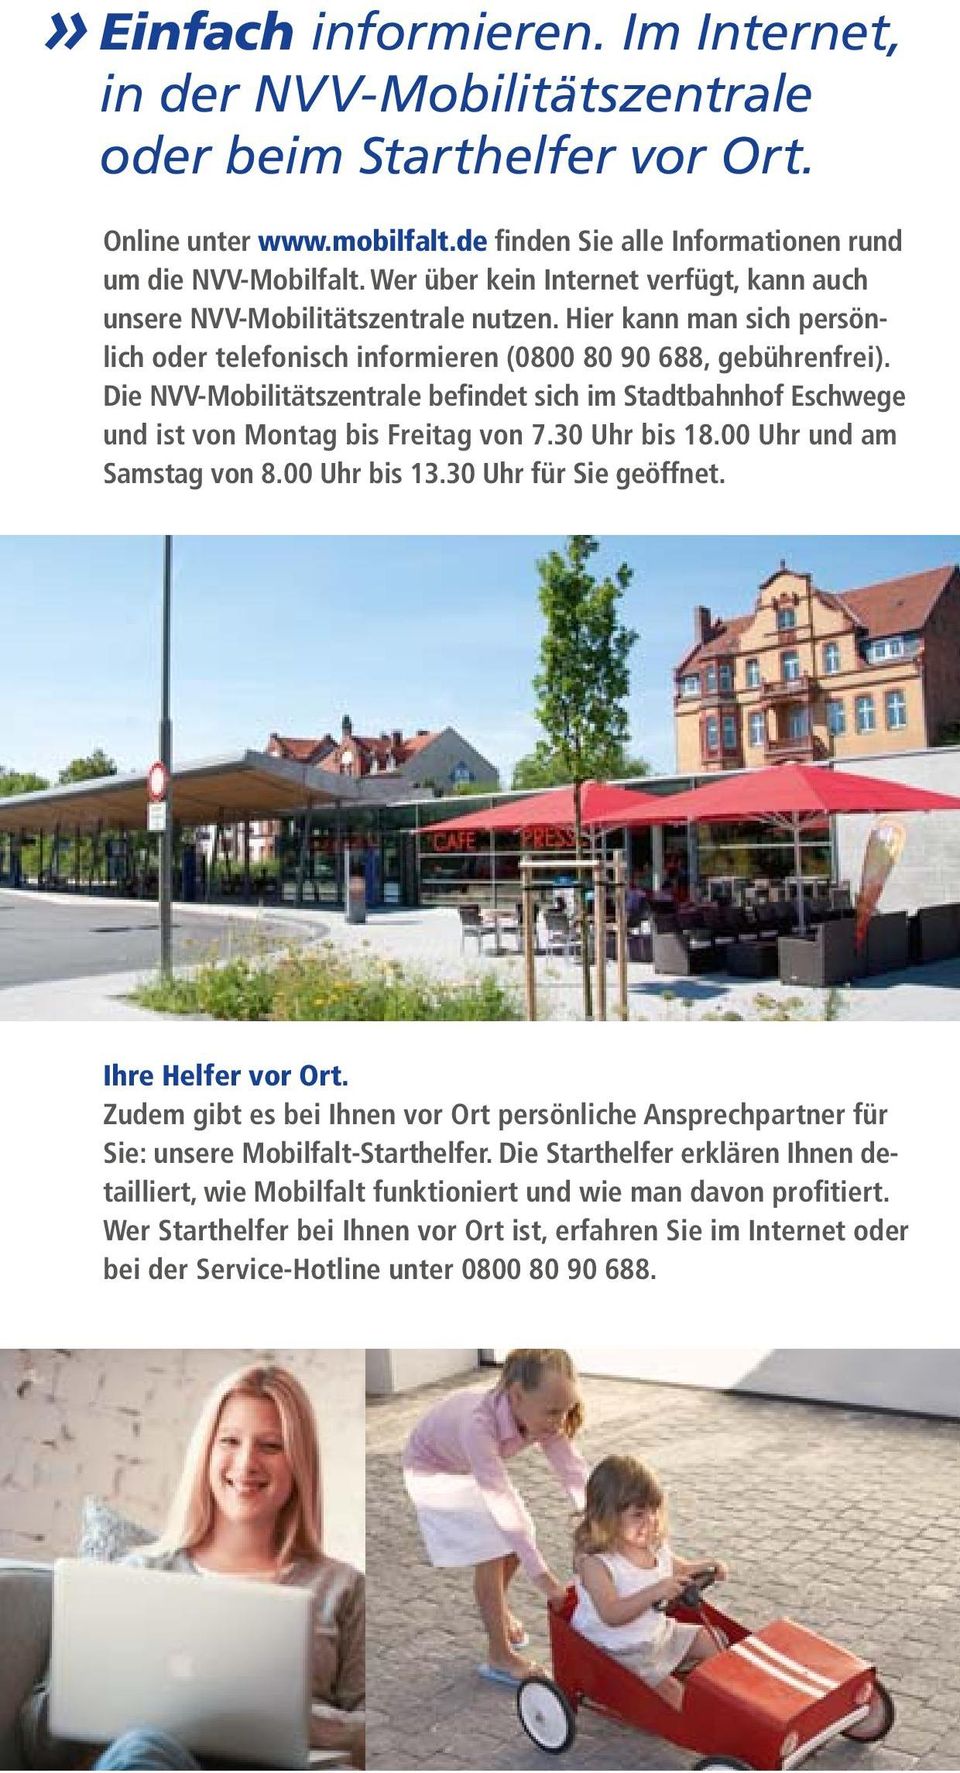 Die NVV-Mobilitätszentrale befindet sich im Stadtbahnhof Eschwege und ist von Montag bis Freitag von 7.30 Uhr bis 18.00 Uhr und am Samstag von 8.00 Uhr bis 13.30 Uhr für Sie geöffnet.